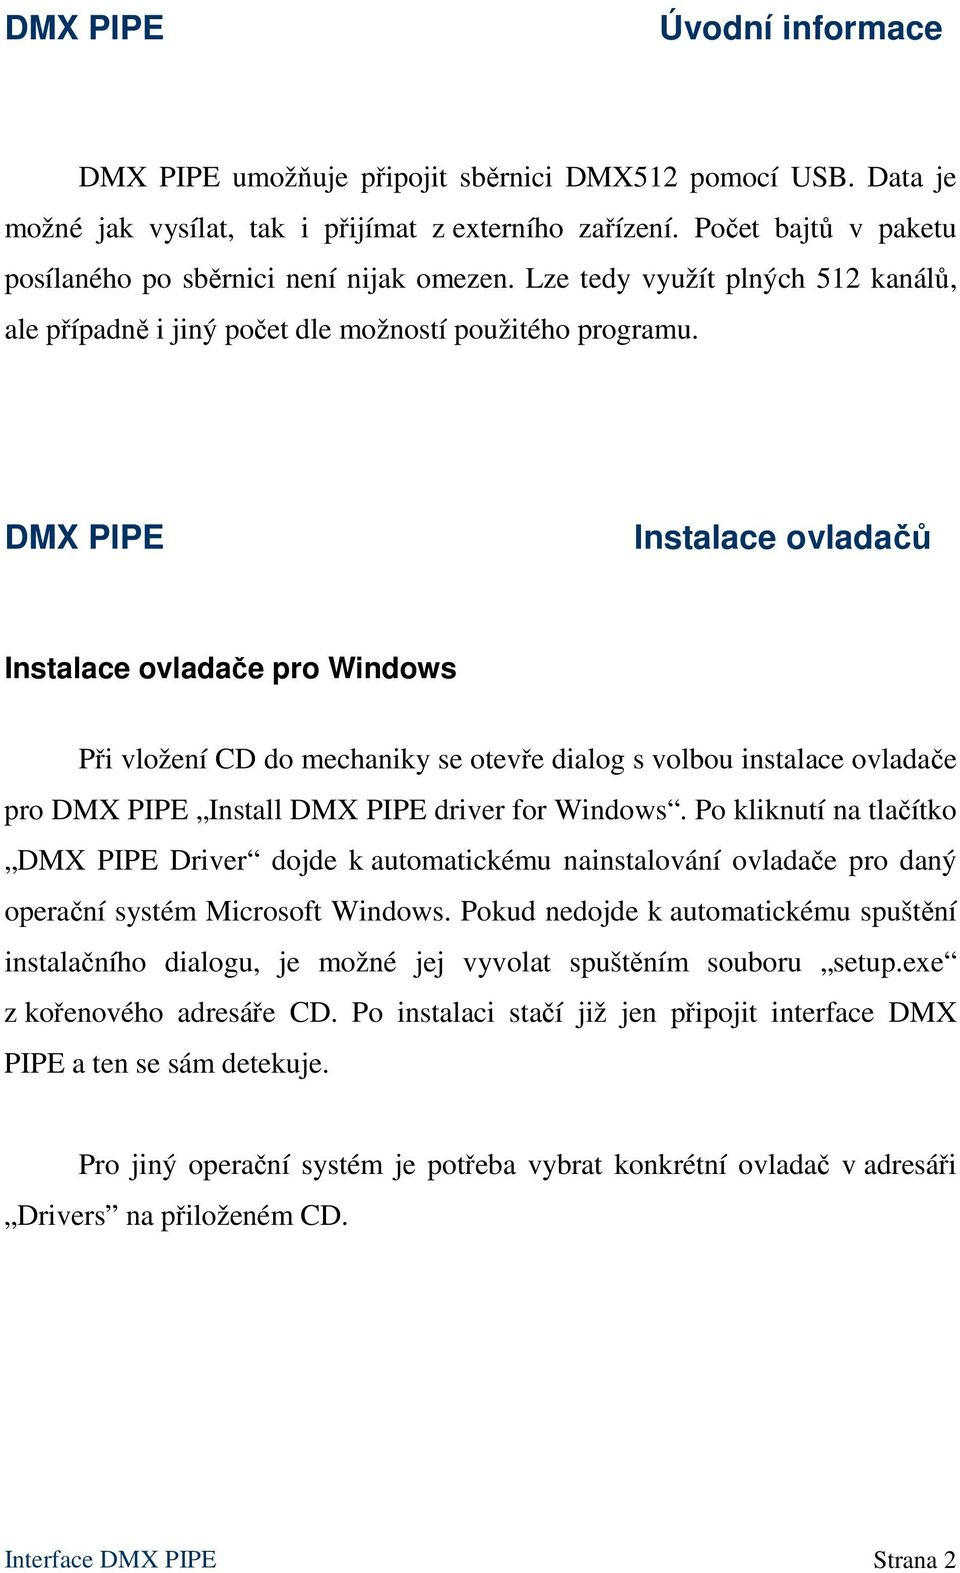 DMX PIPE Instalace ovladačů Instalace ovladače pro Windows Při vložení CD do mechaniky se otevře dialog s volbou instalace ovladače pro DMX PIPE Install DMX PIPE driver for Windows.